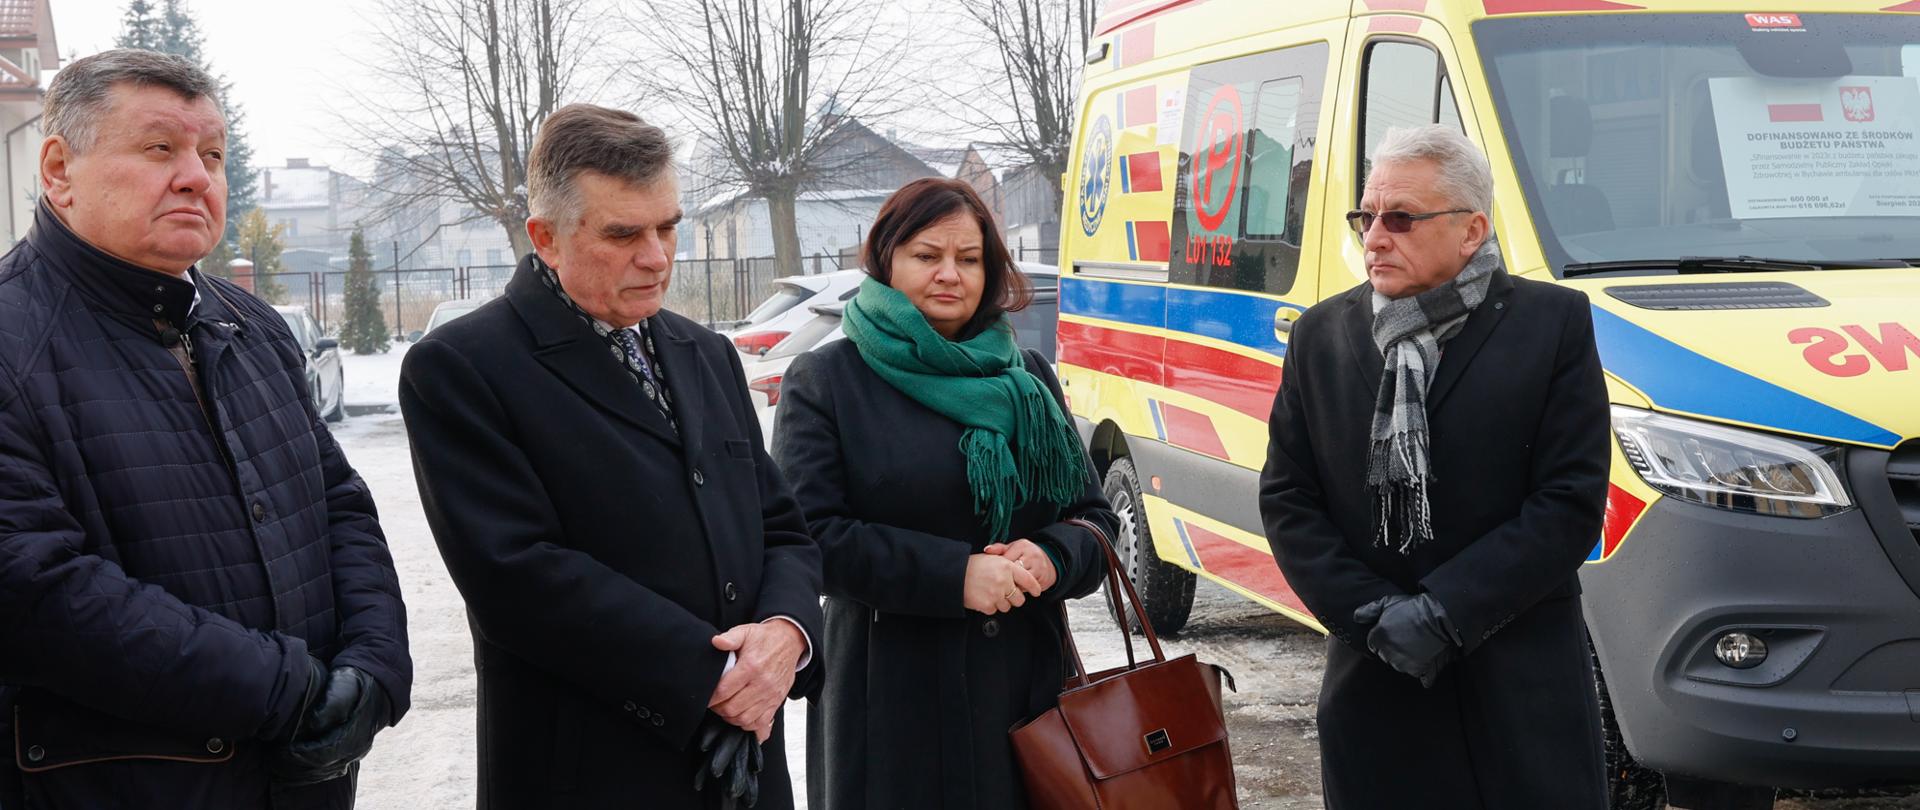 Ambulans z rządowym dofinasowaniem dla szpitala w Bychawie.